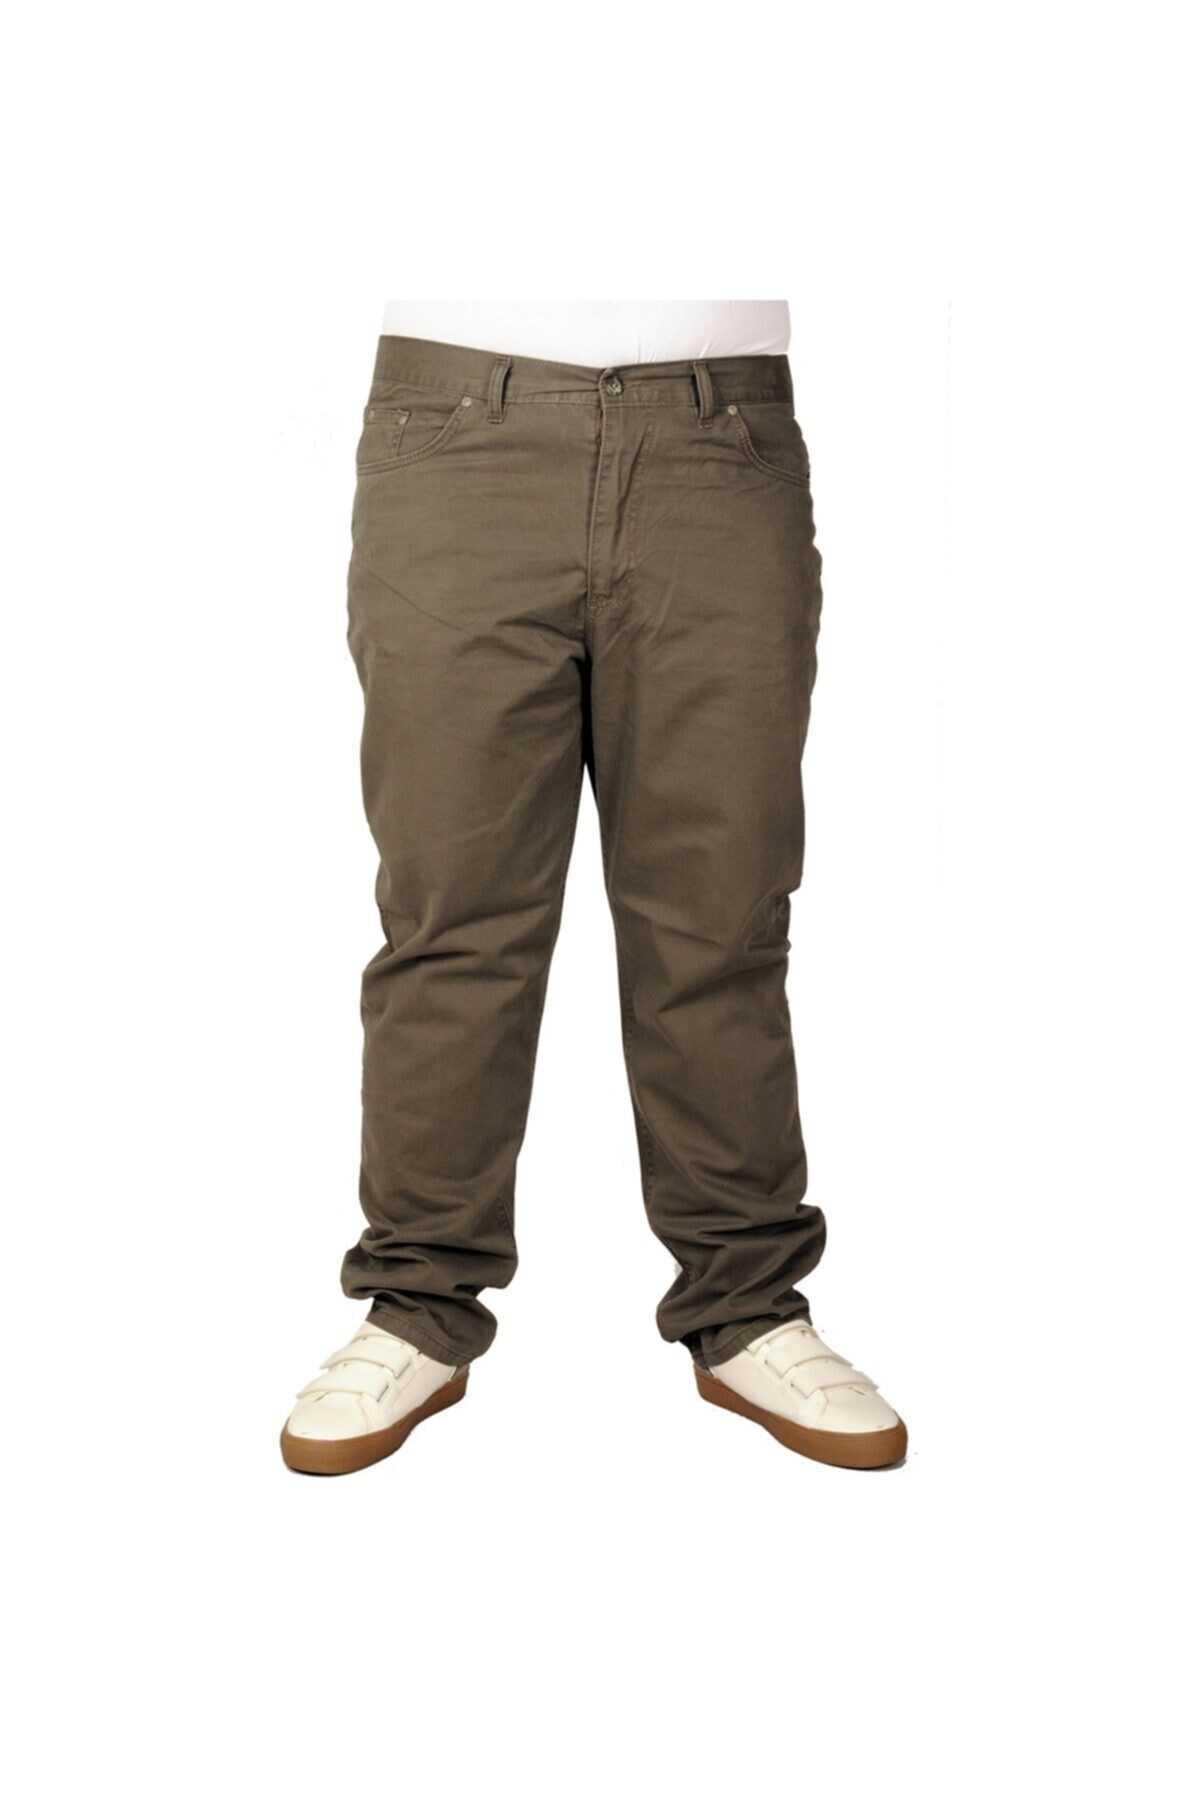 شلوار کتان سایز بزرگ جیب دار مردانه خاکی برند ModeXL 